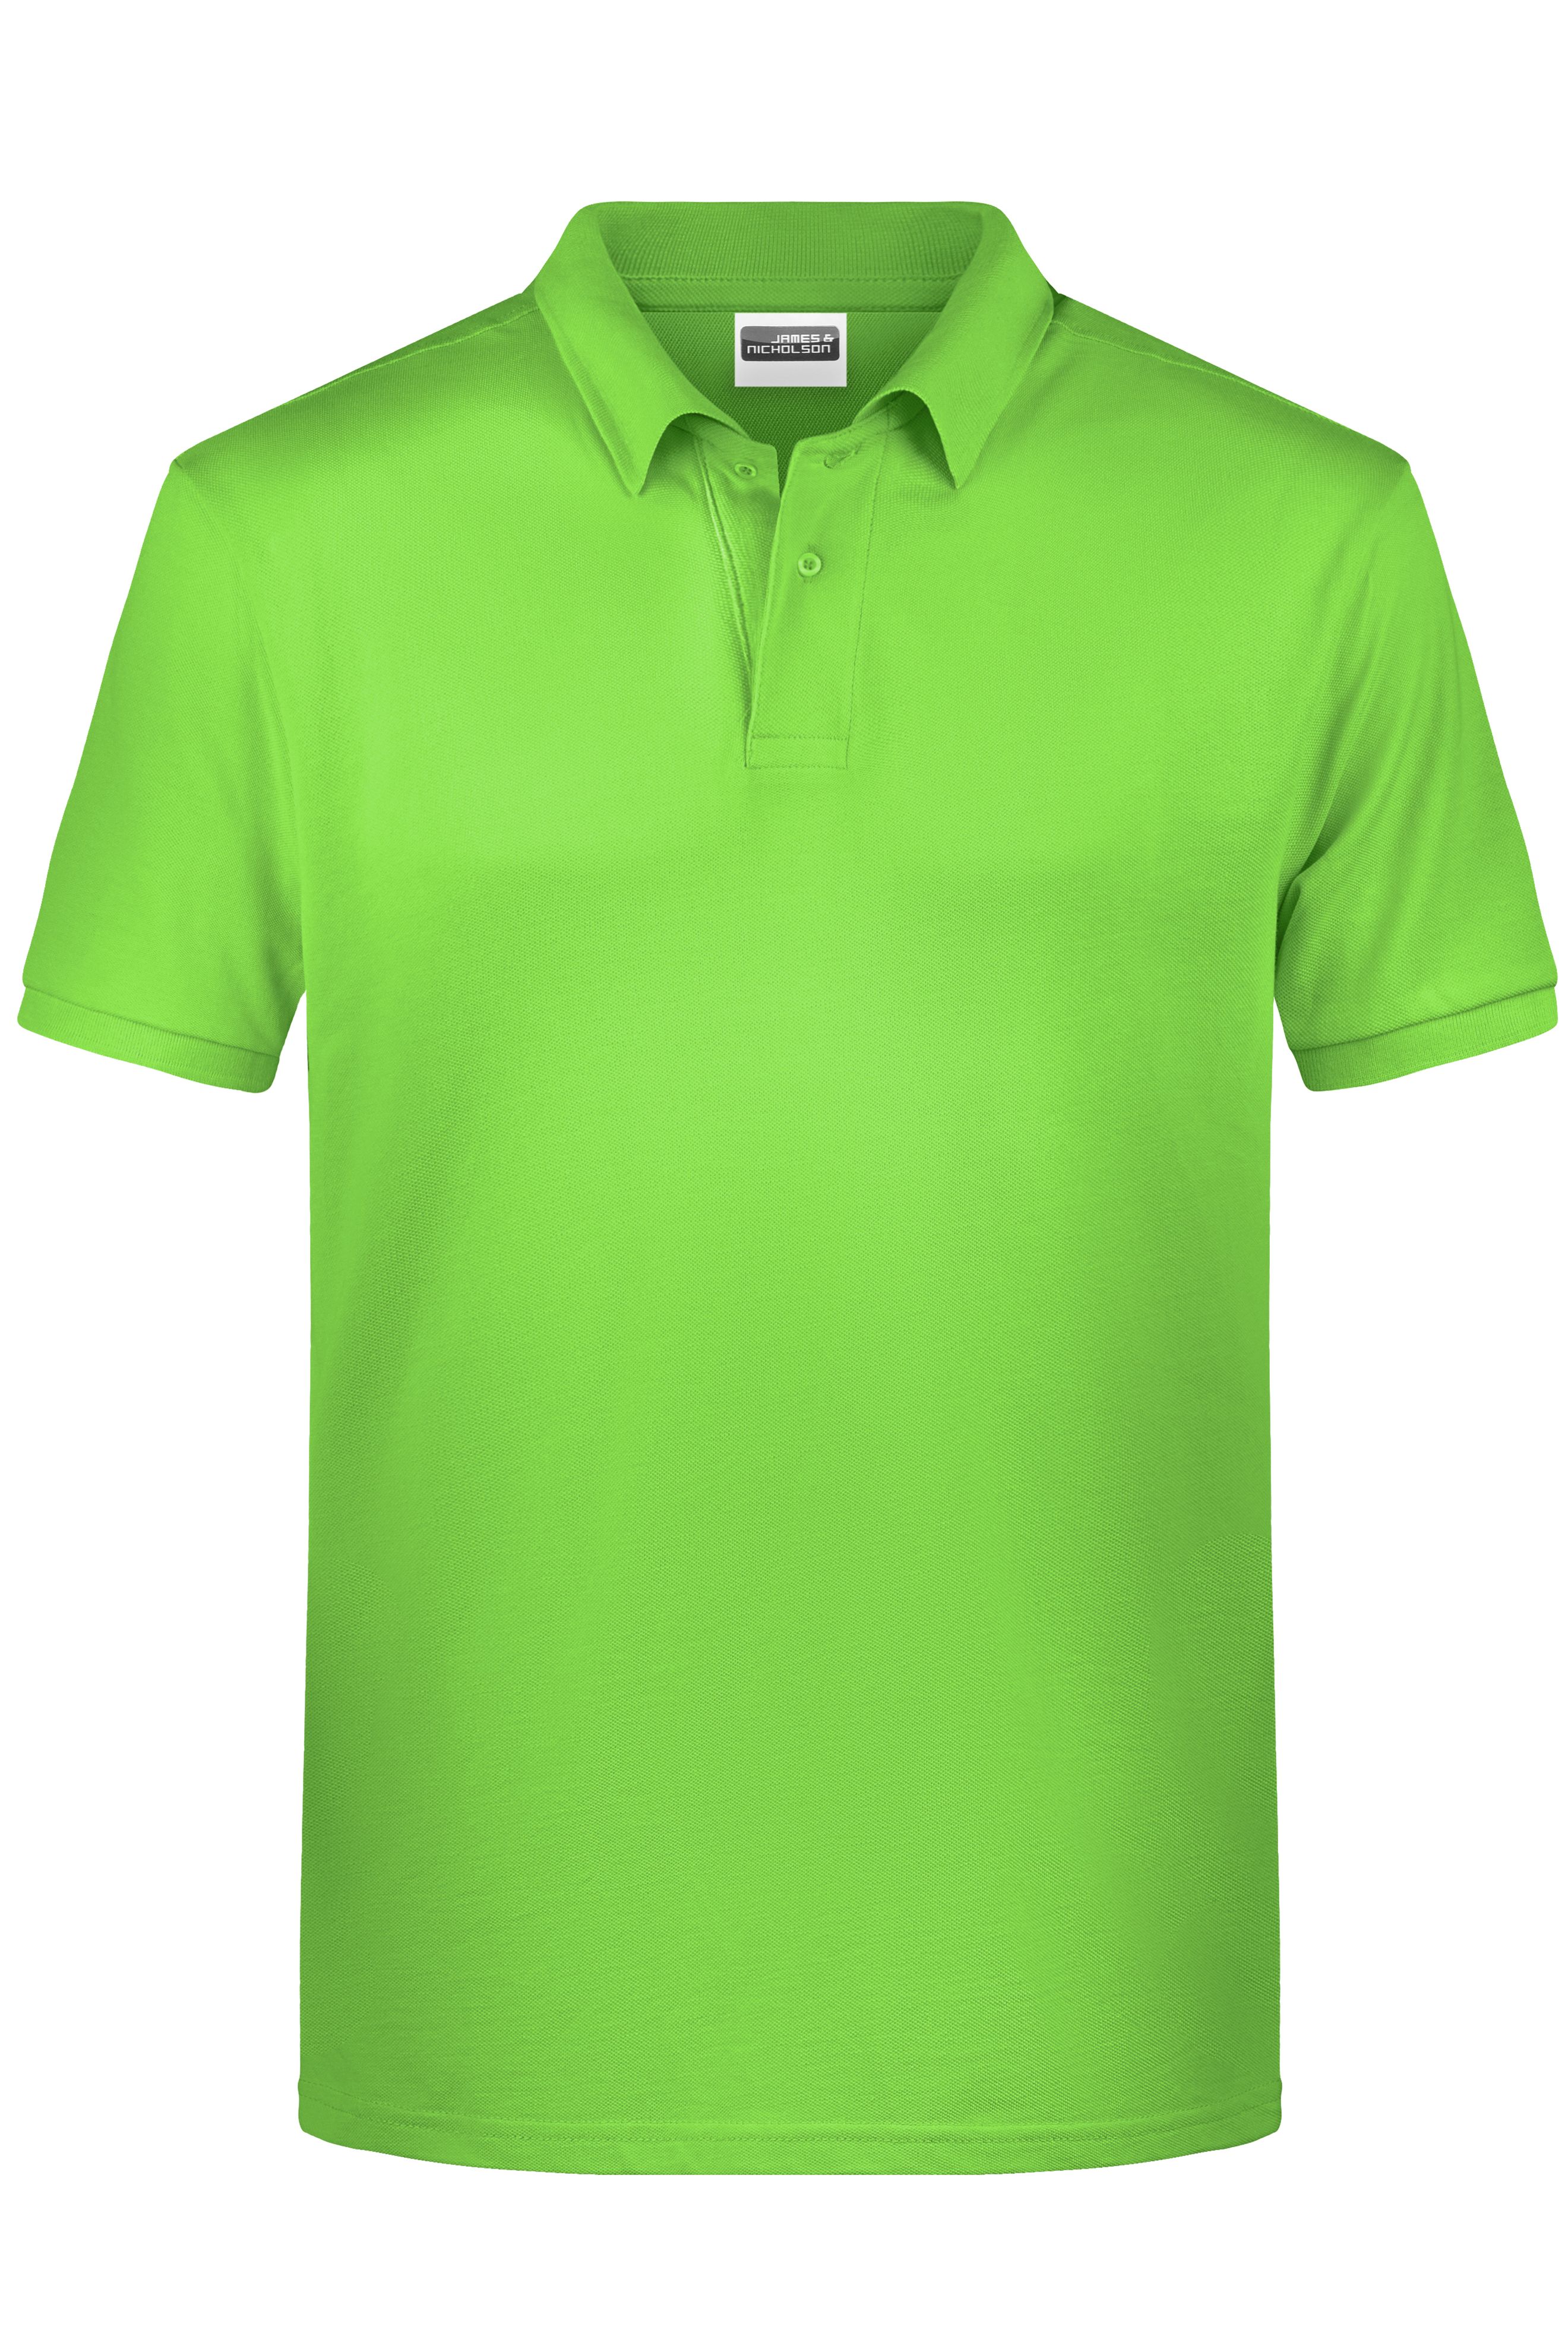 Men Men's Basic Polo Lime-green-Daiber